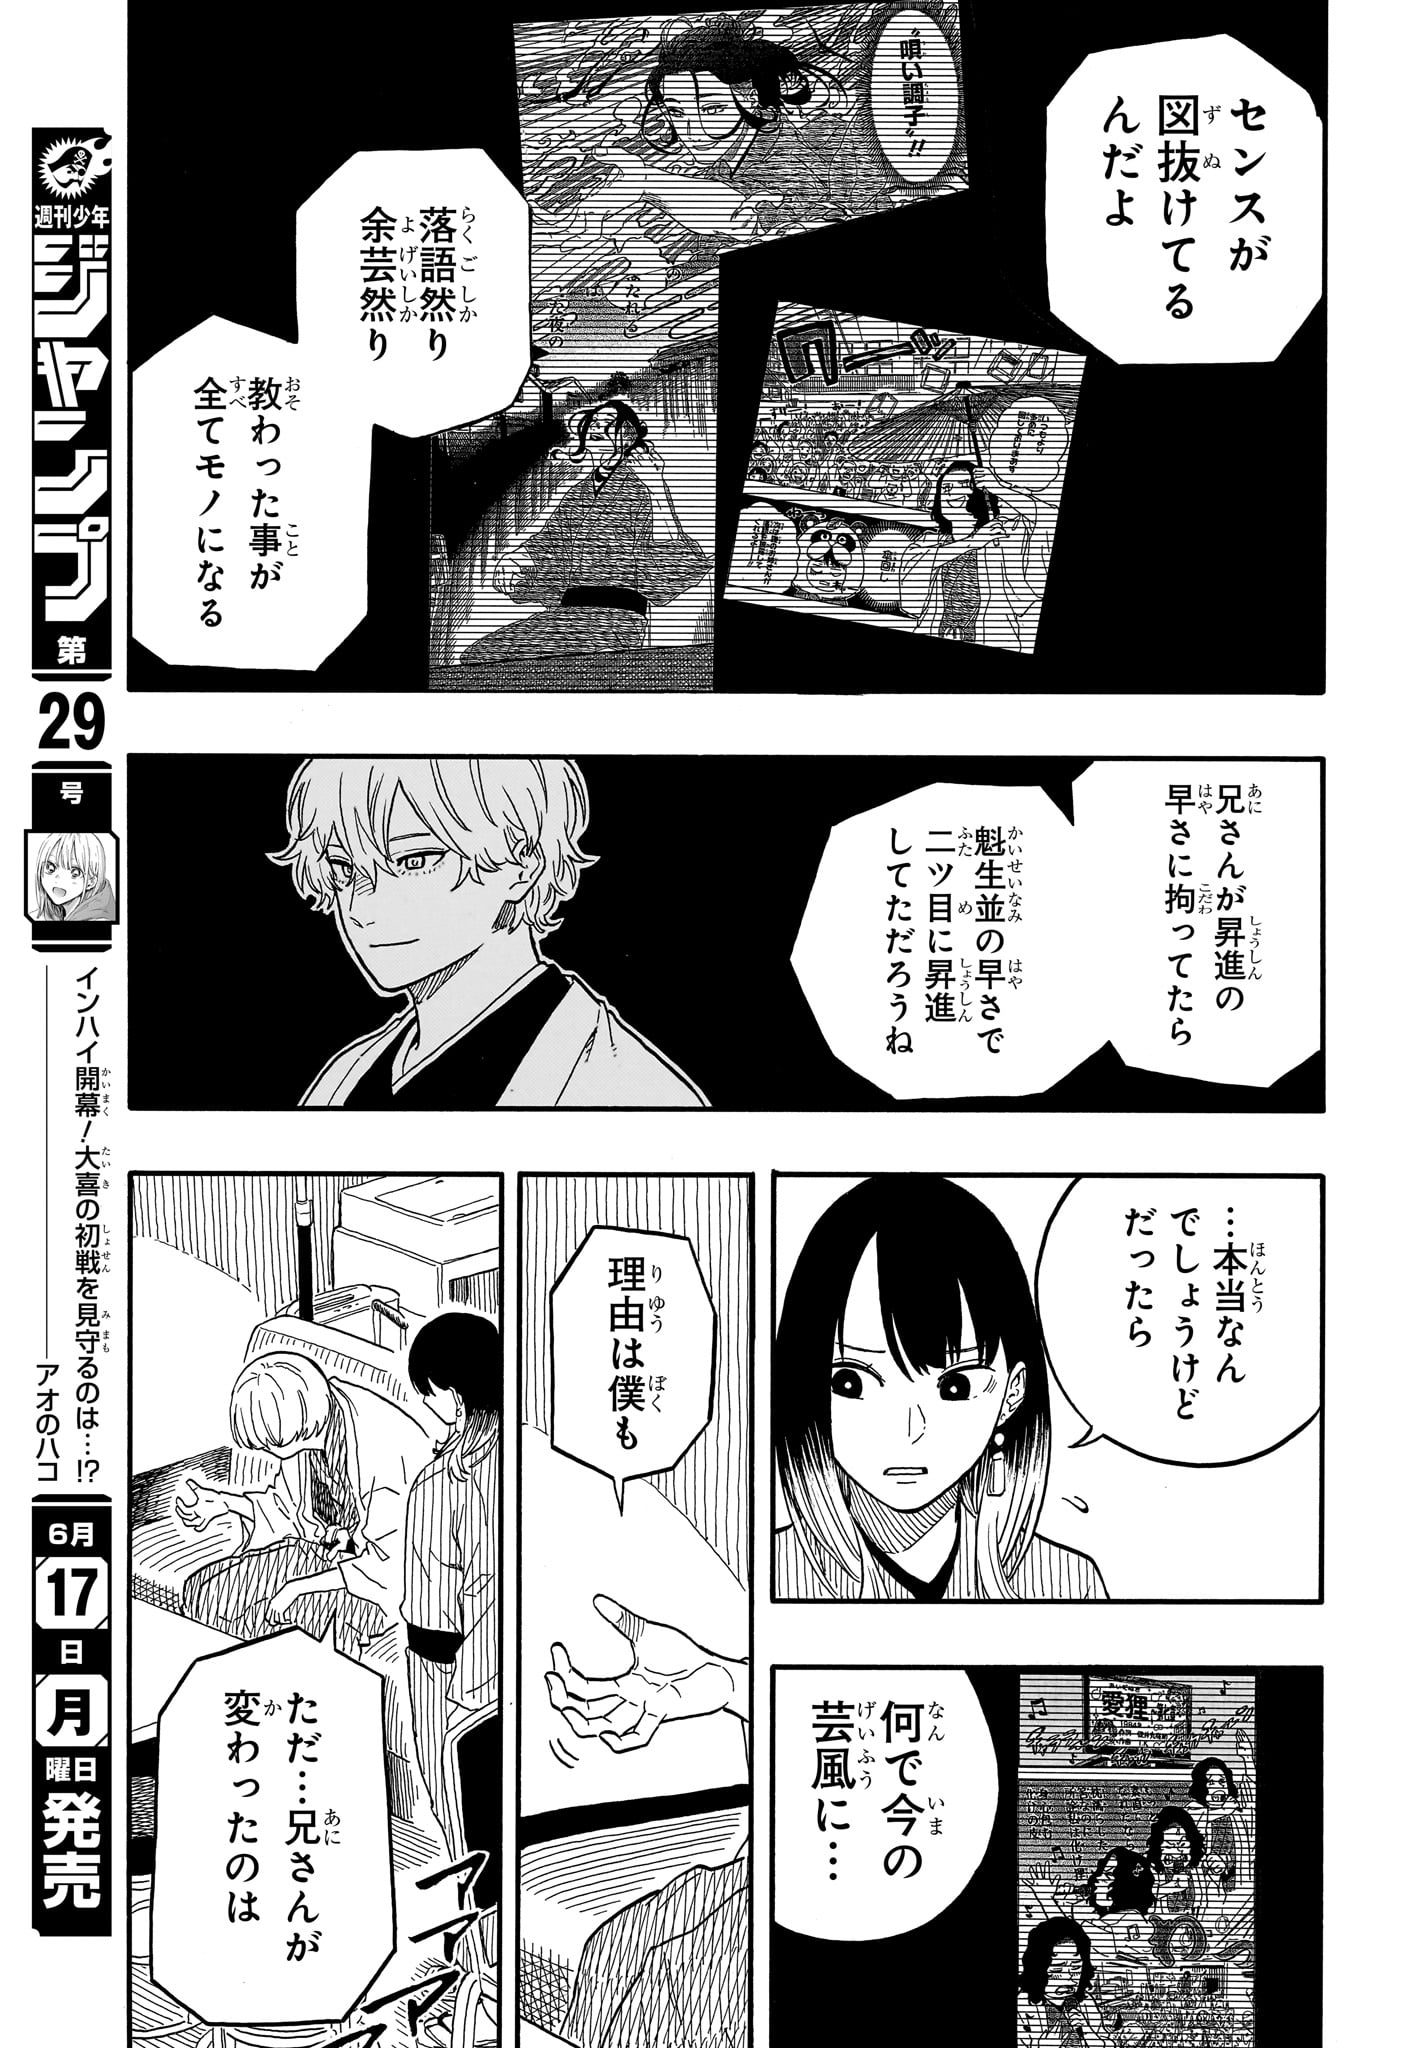 Akane-Banashi - Chapter 113 - Page 9